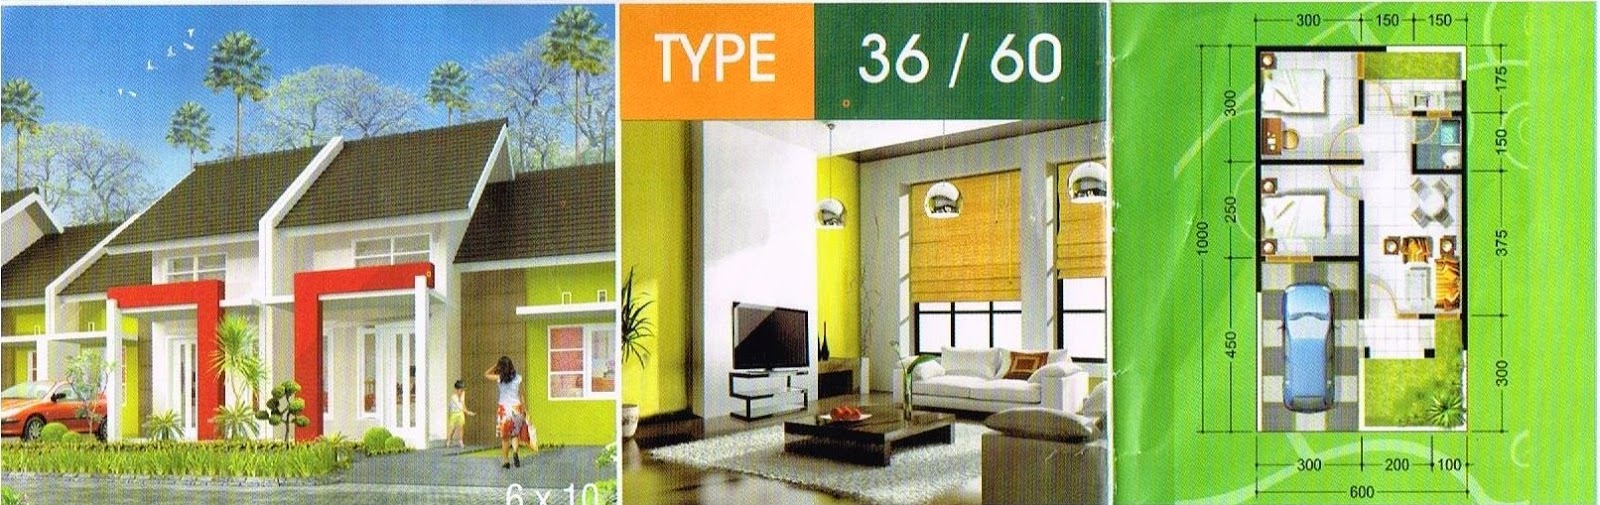 Desain Rumah Minimalis Type 36 Luas Tanah 60 Desain Rumah Minimalis